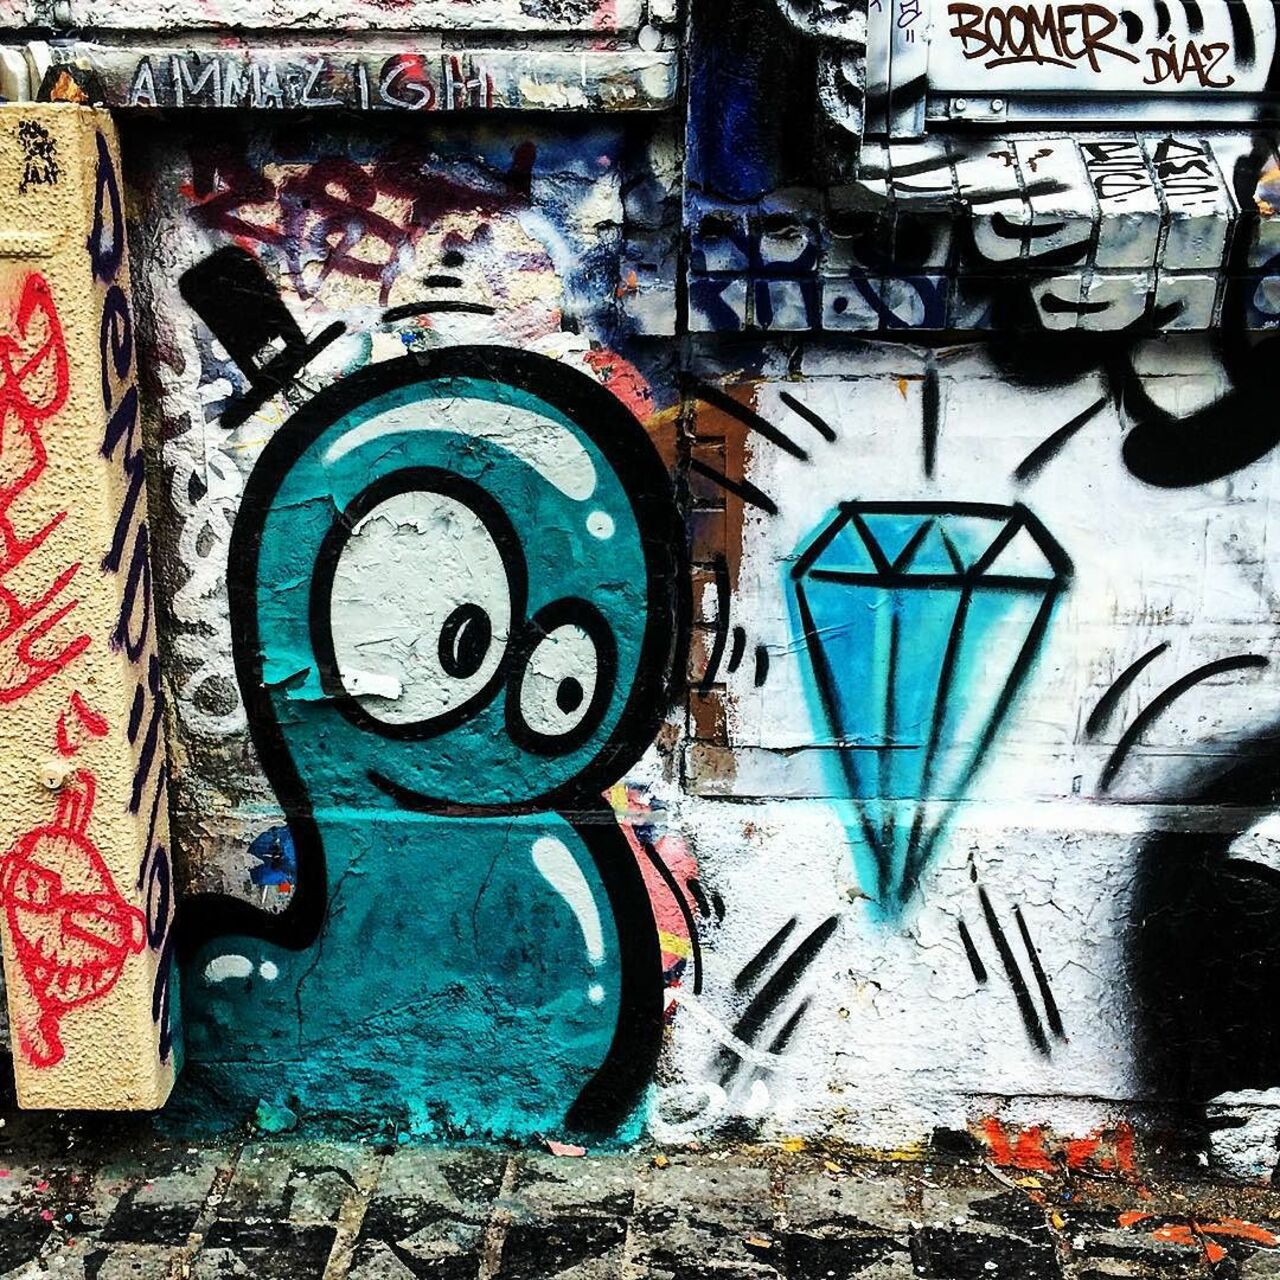 #Paris #graffiti photo by @julosteart http://ift.tt/1KuYARF #StreetArt https://t.co/qusXgxa531